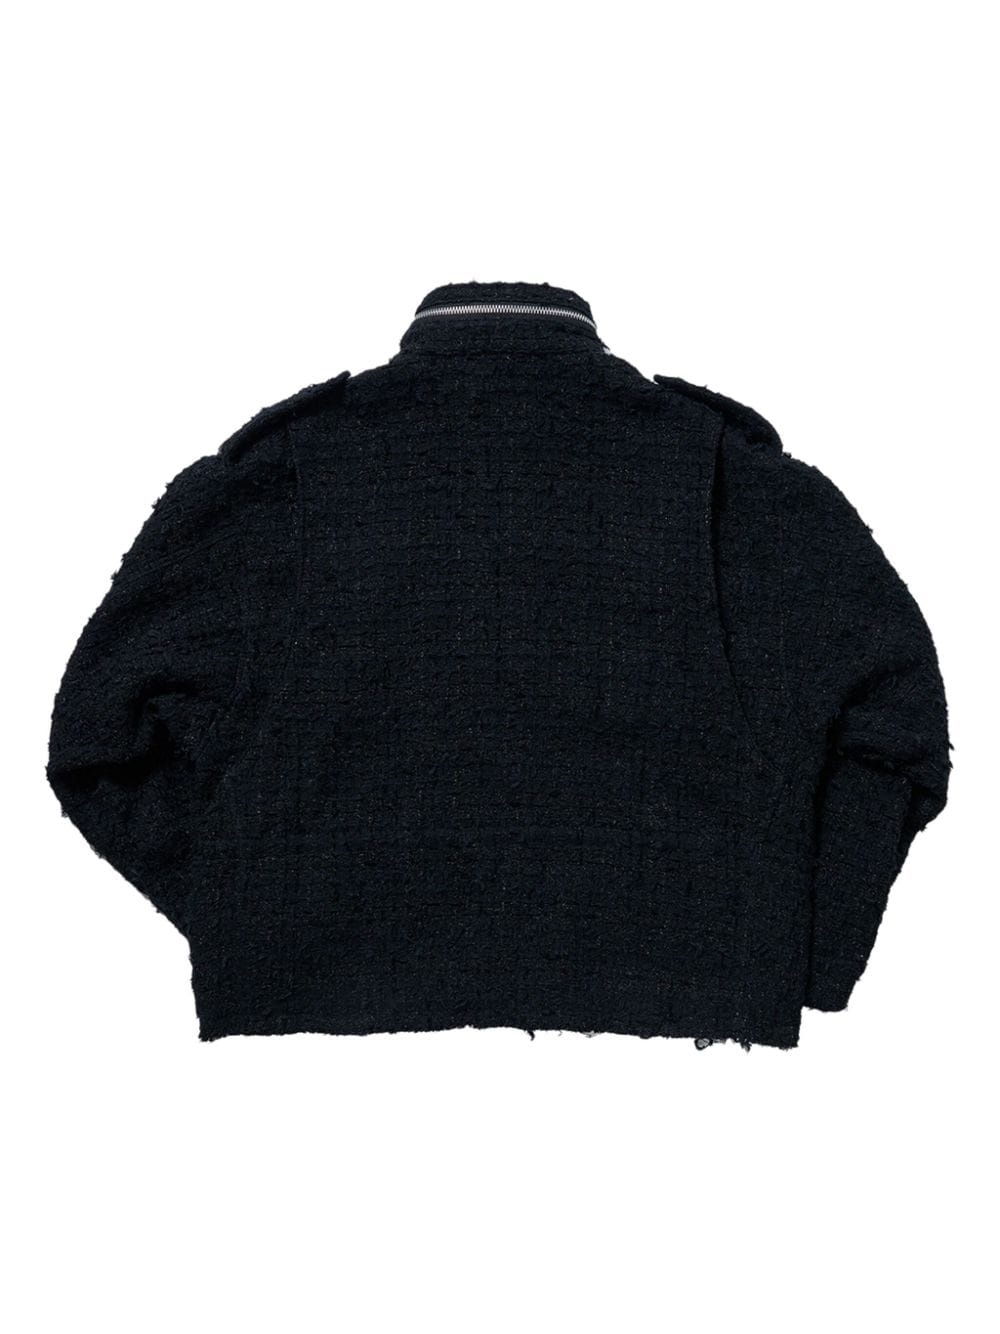 raw-cut tweed military jacket - 2